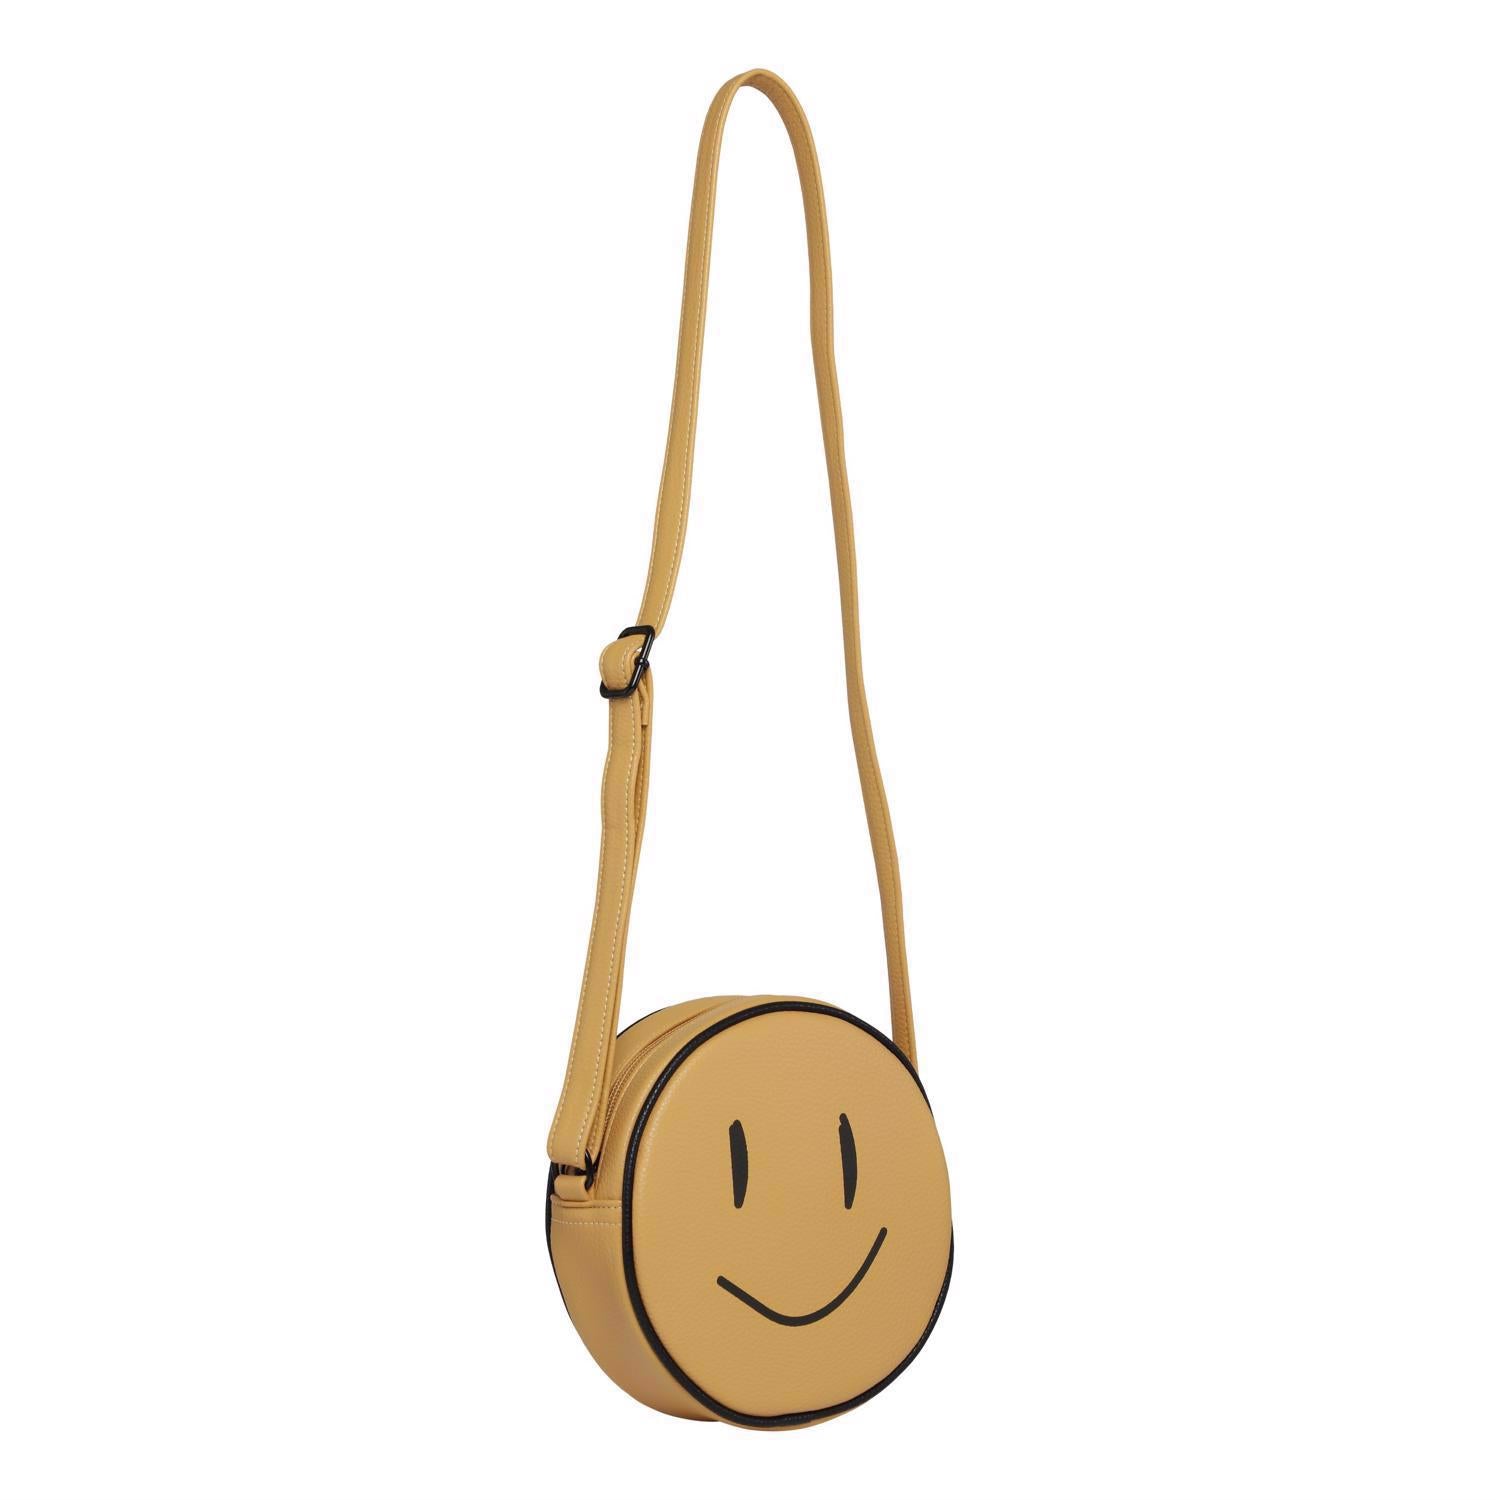 MOLO / Smiley bag